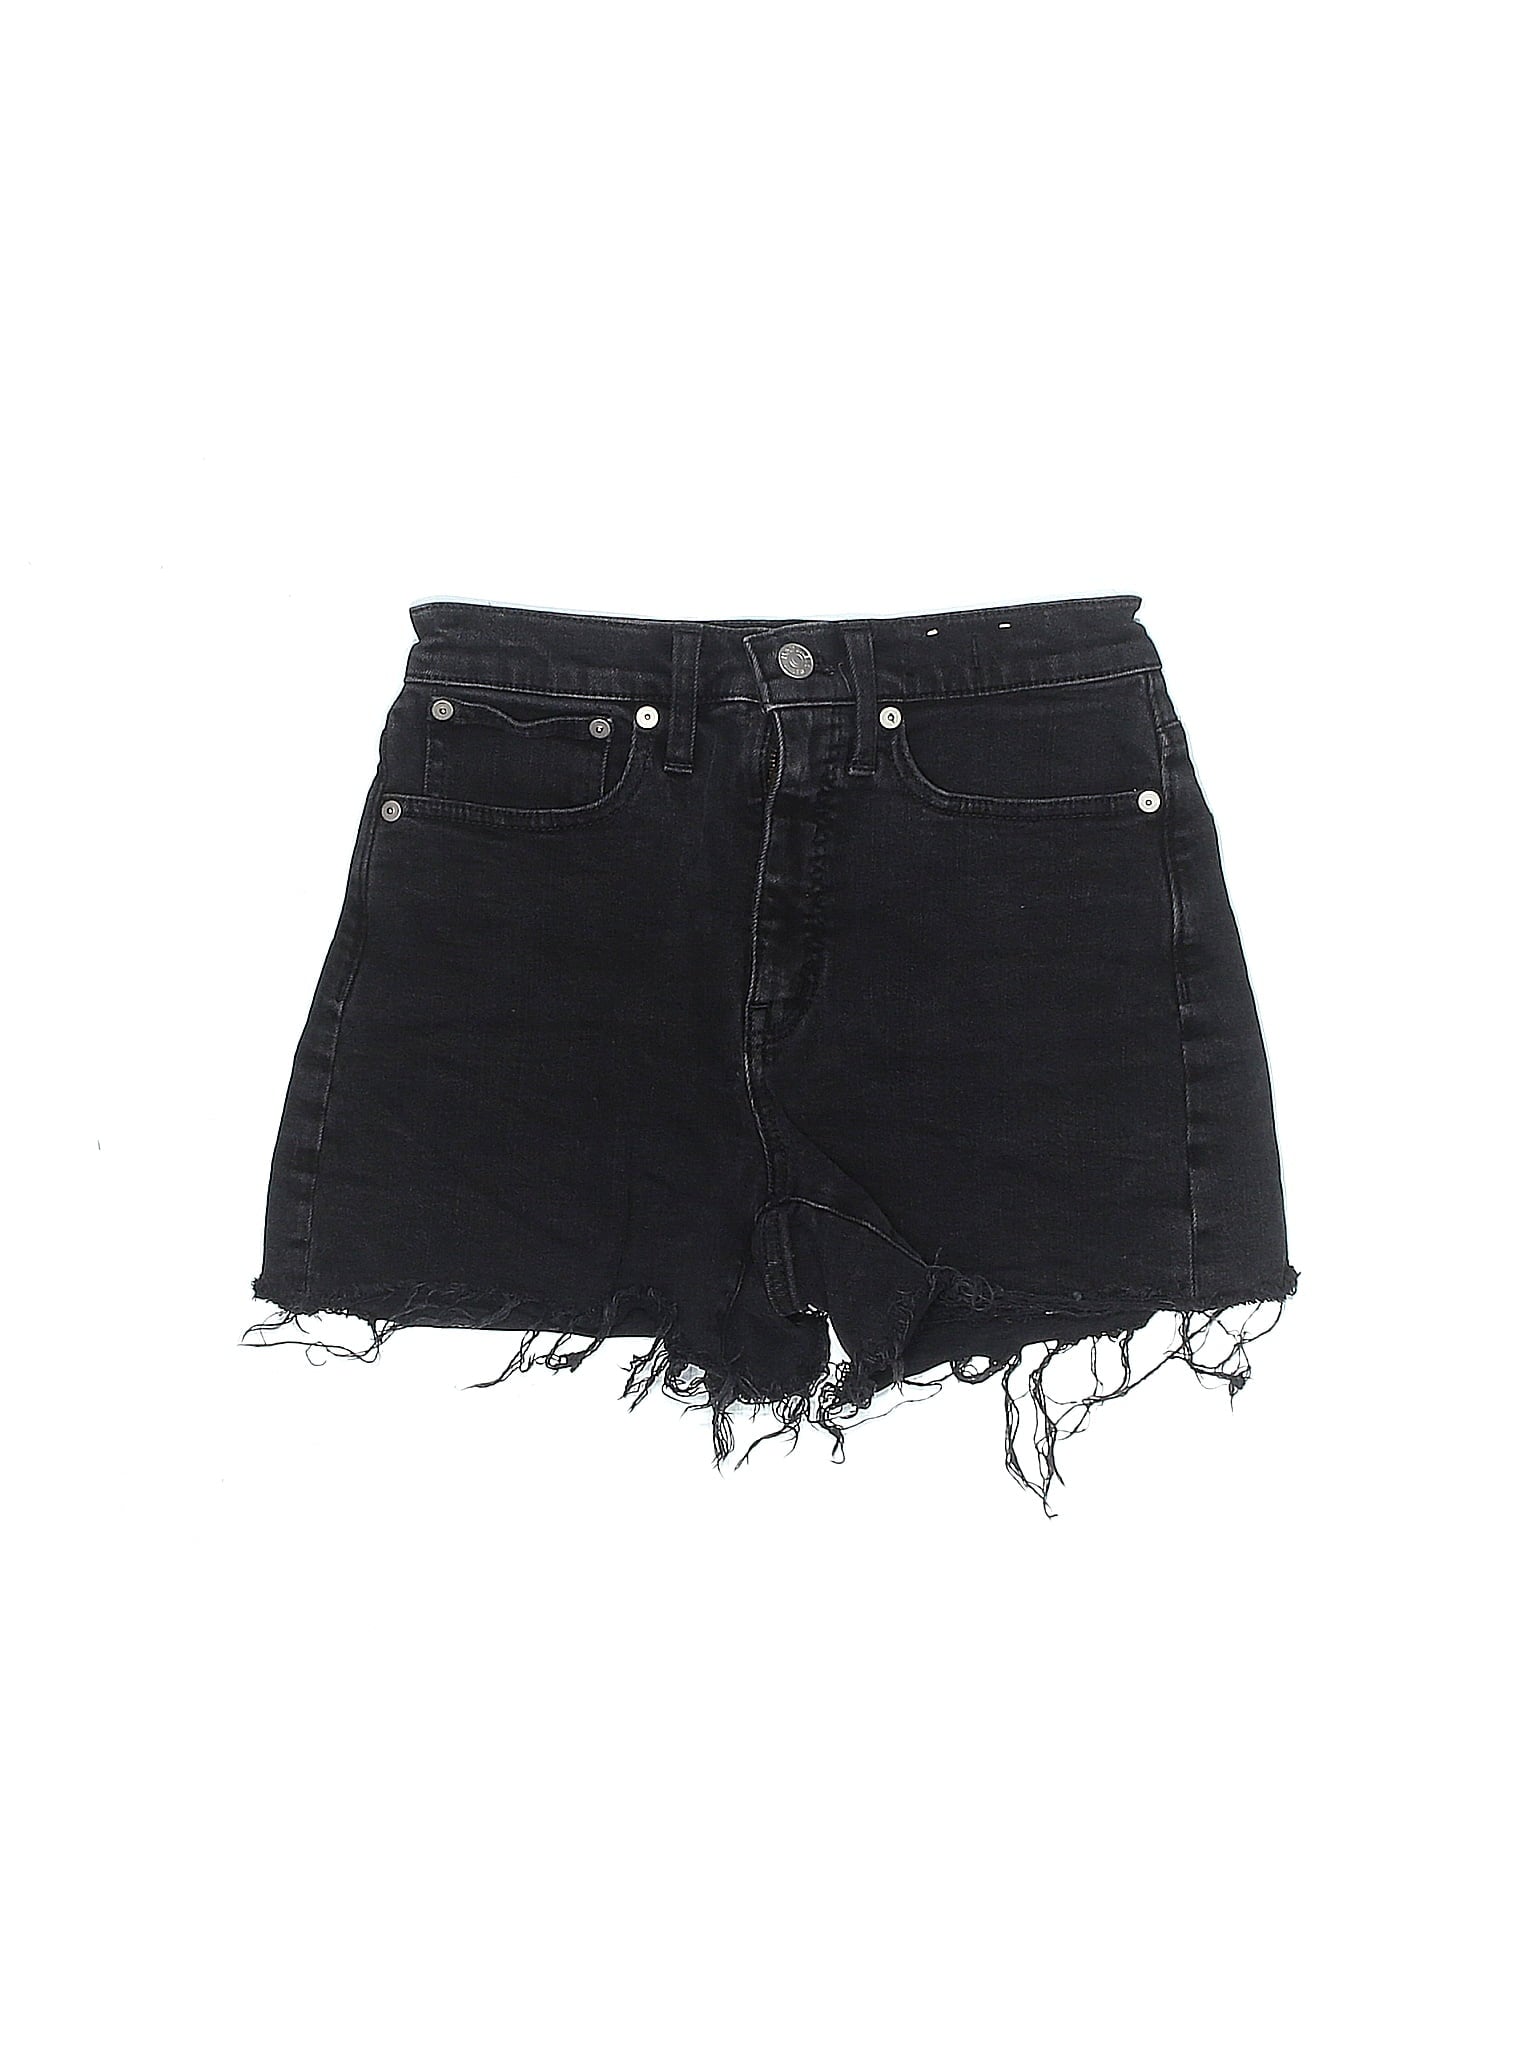 Mid-Rise Denim Shorts in Dark Wash waist size - 24